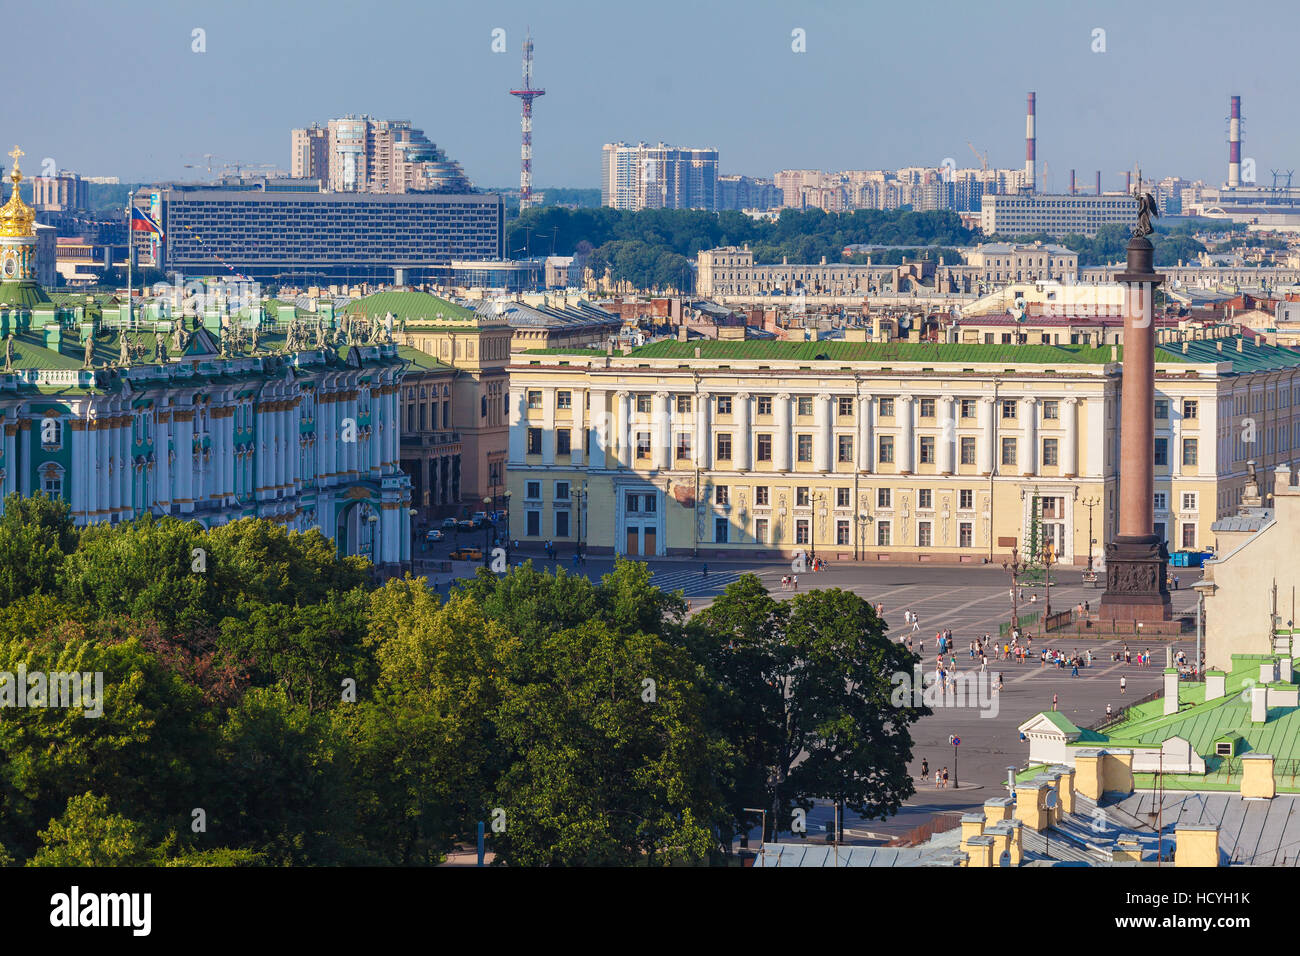 Vue aérienne de la cathédrale Isaac, Saint Petersburg, Russie Banque D'Images